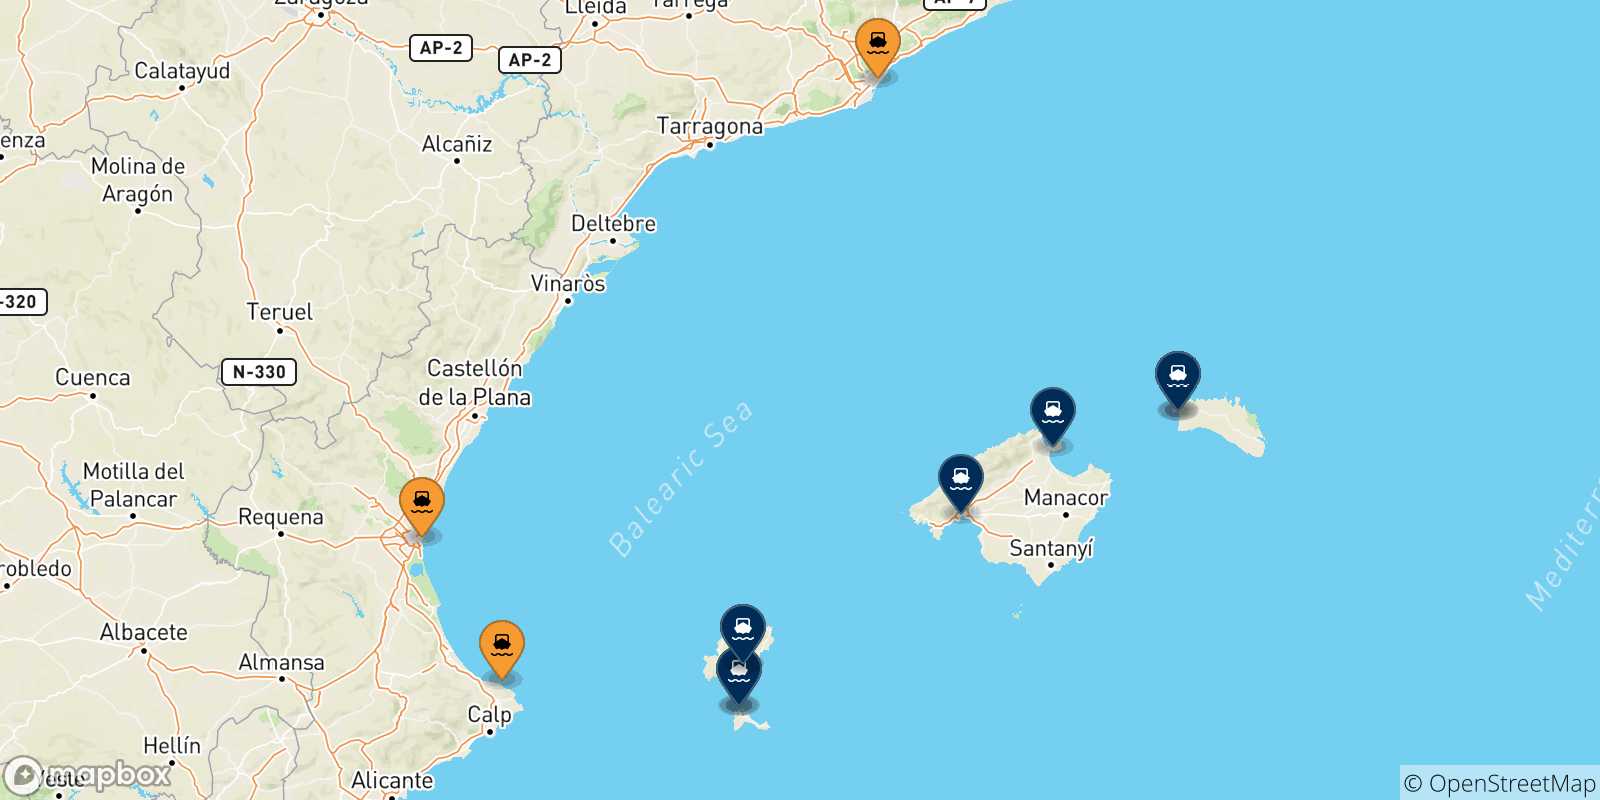 Mapa de las posibles rutas entre España y  Islas Baleares